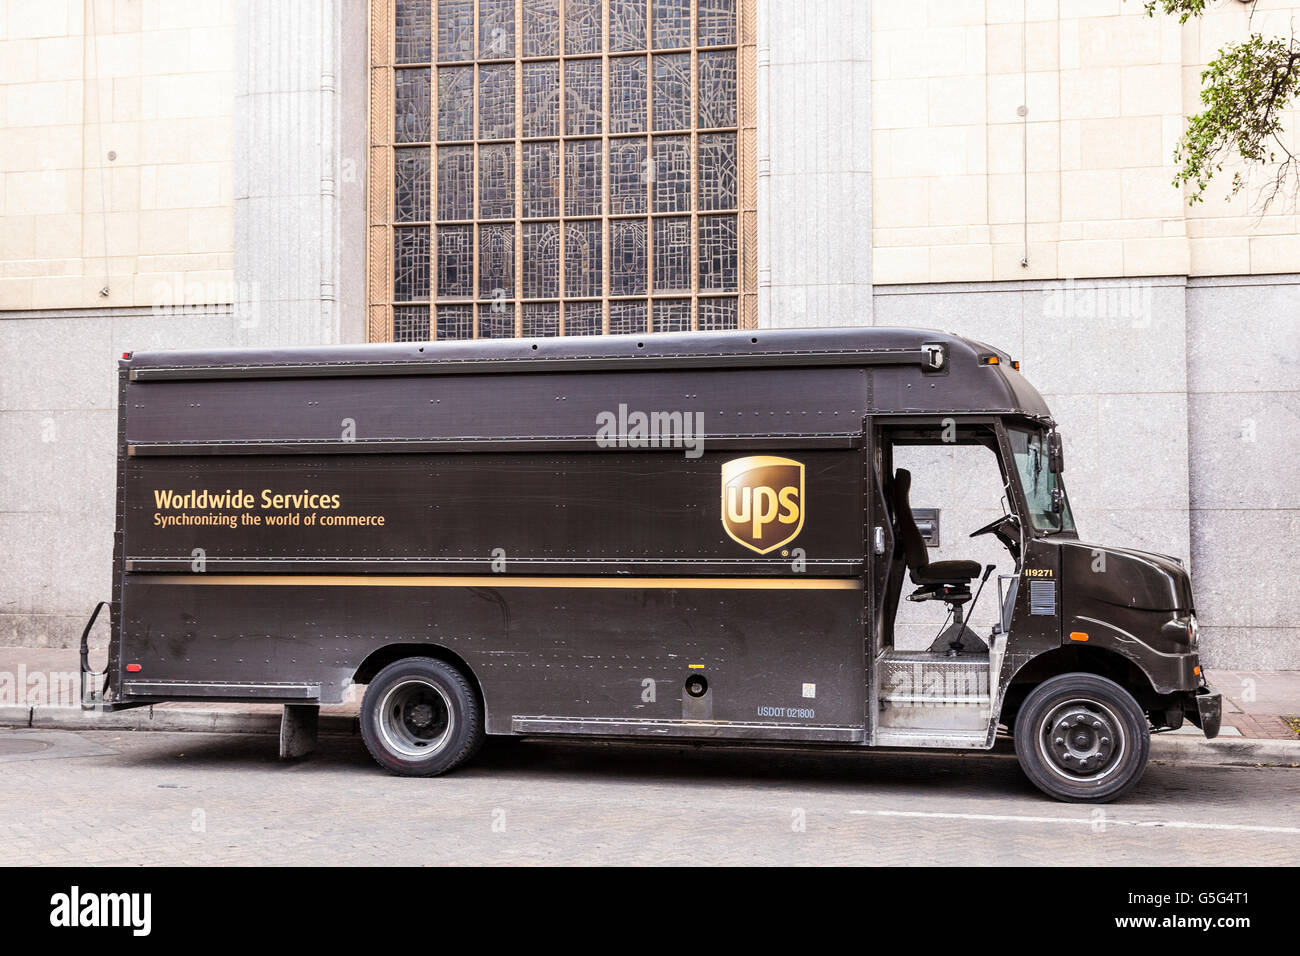 UPS carrello consegna negli Stati Uniti Foto Stock